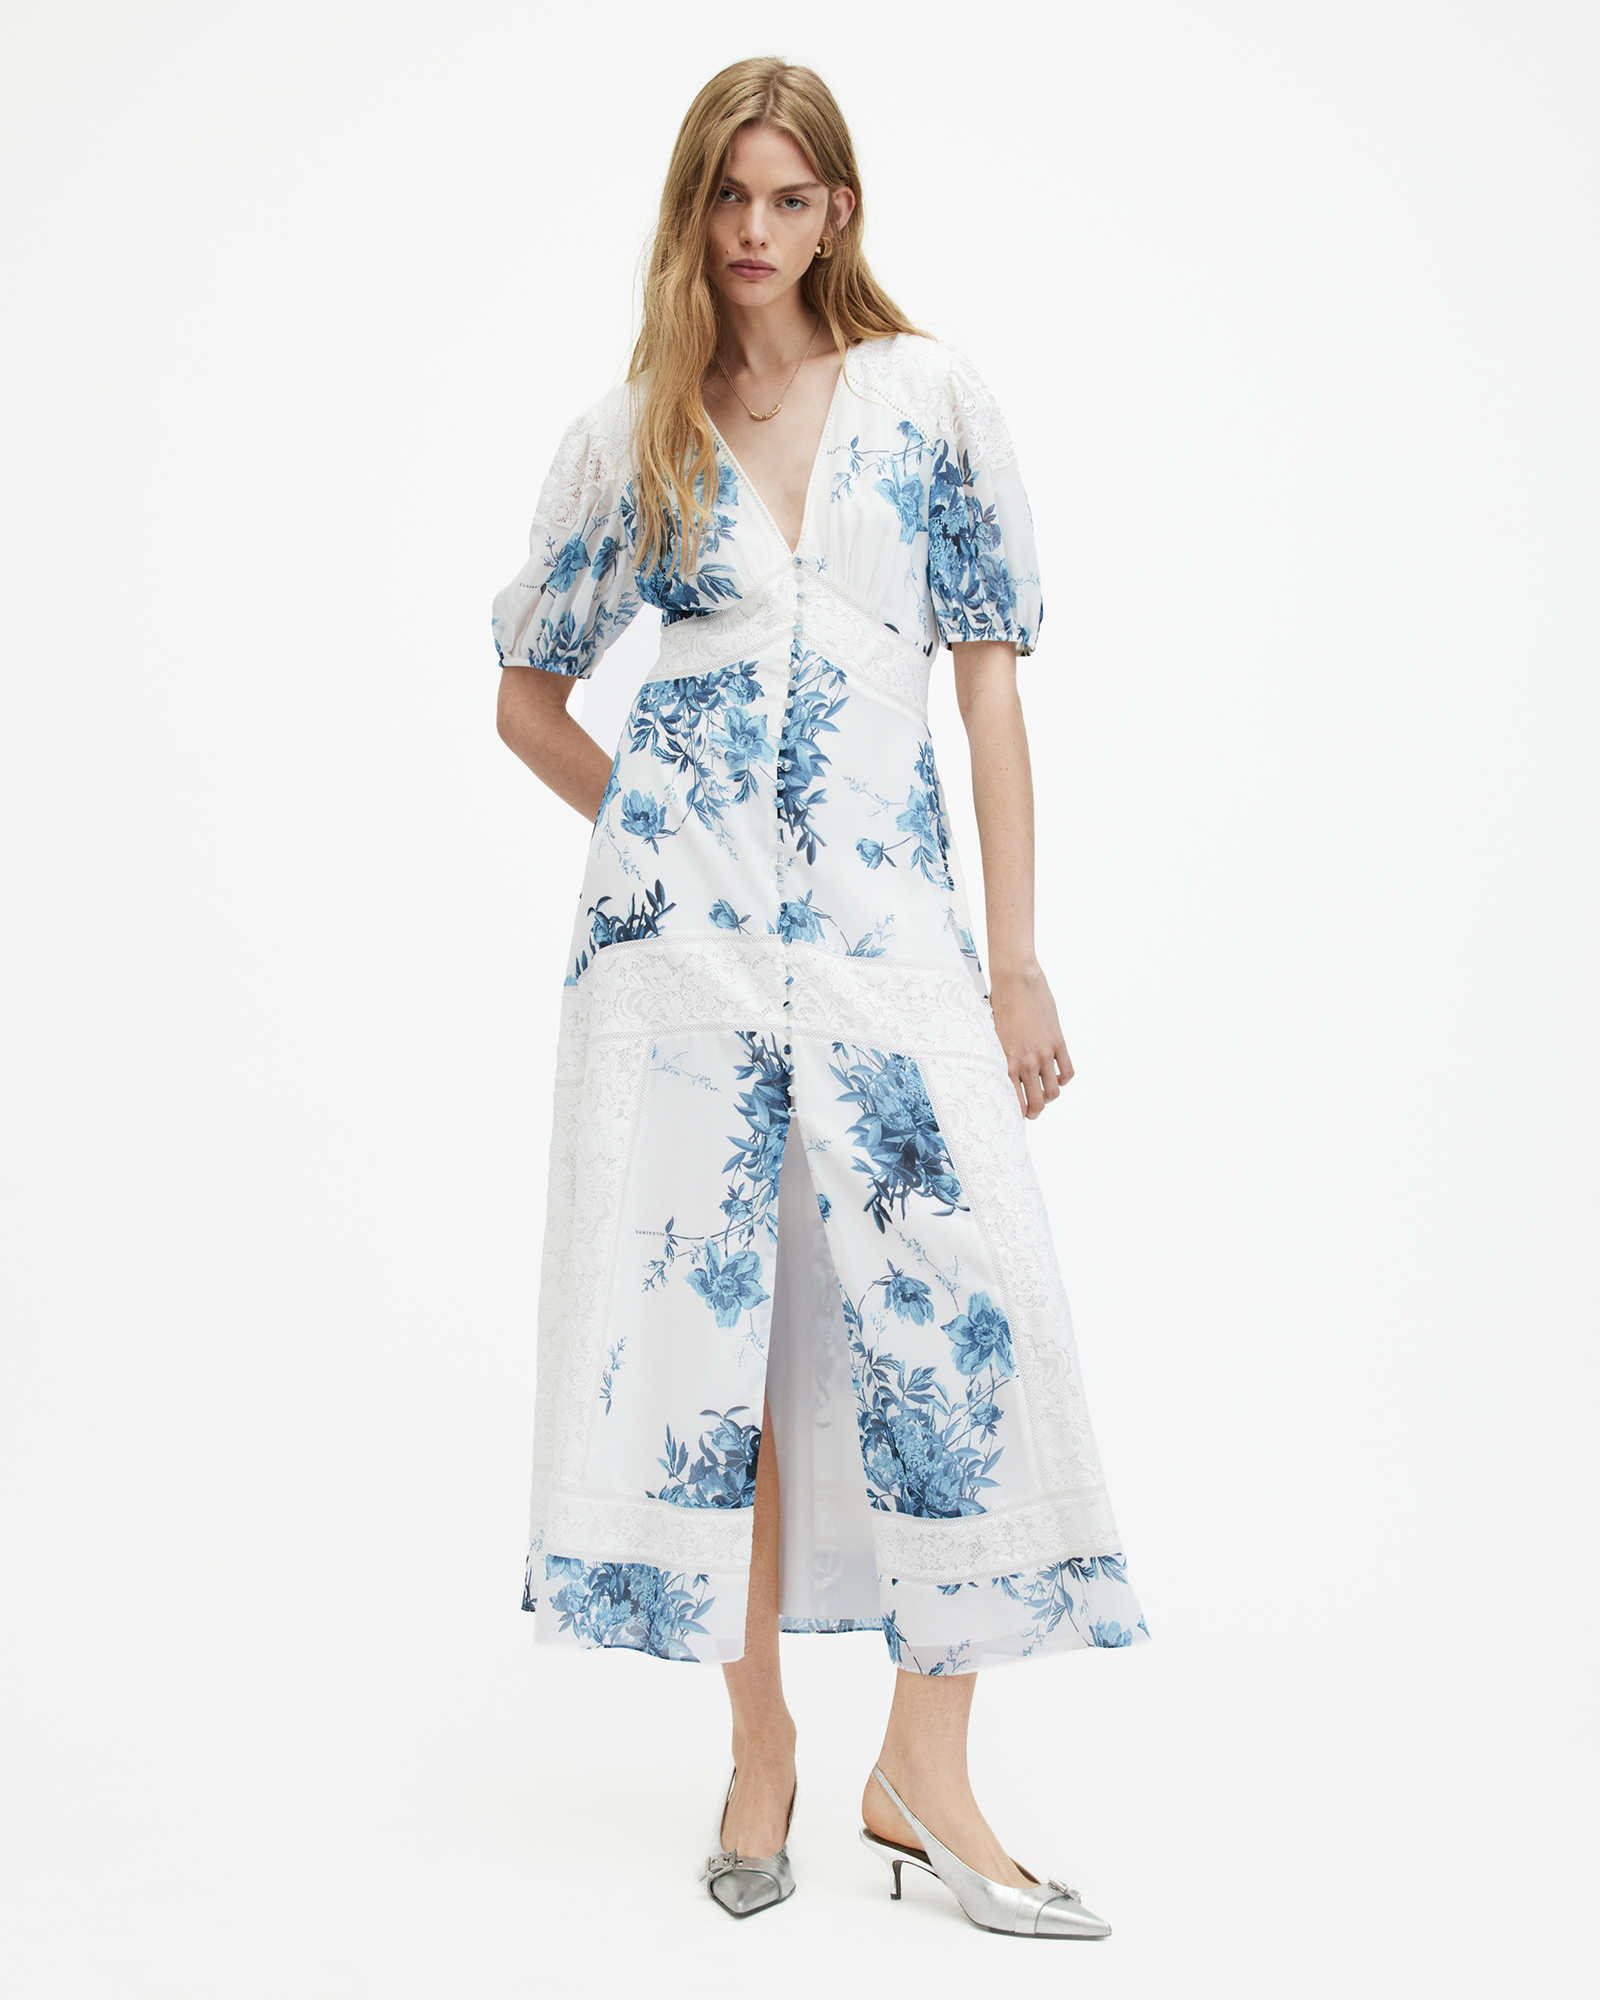 AllSaints Dinah Lace Dekorah Floral Maxi Dress,, Denim Blue